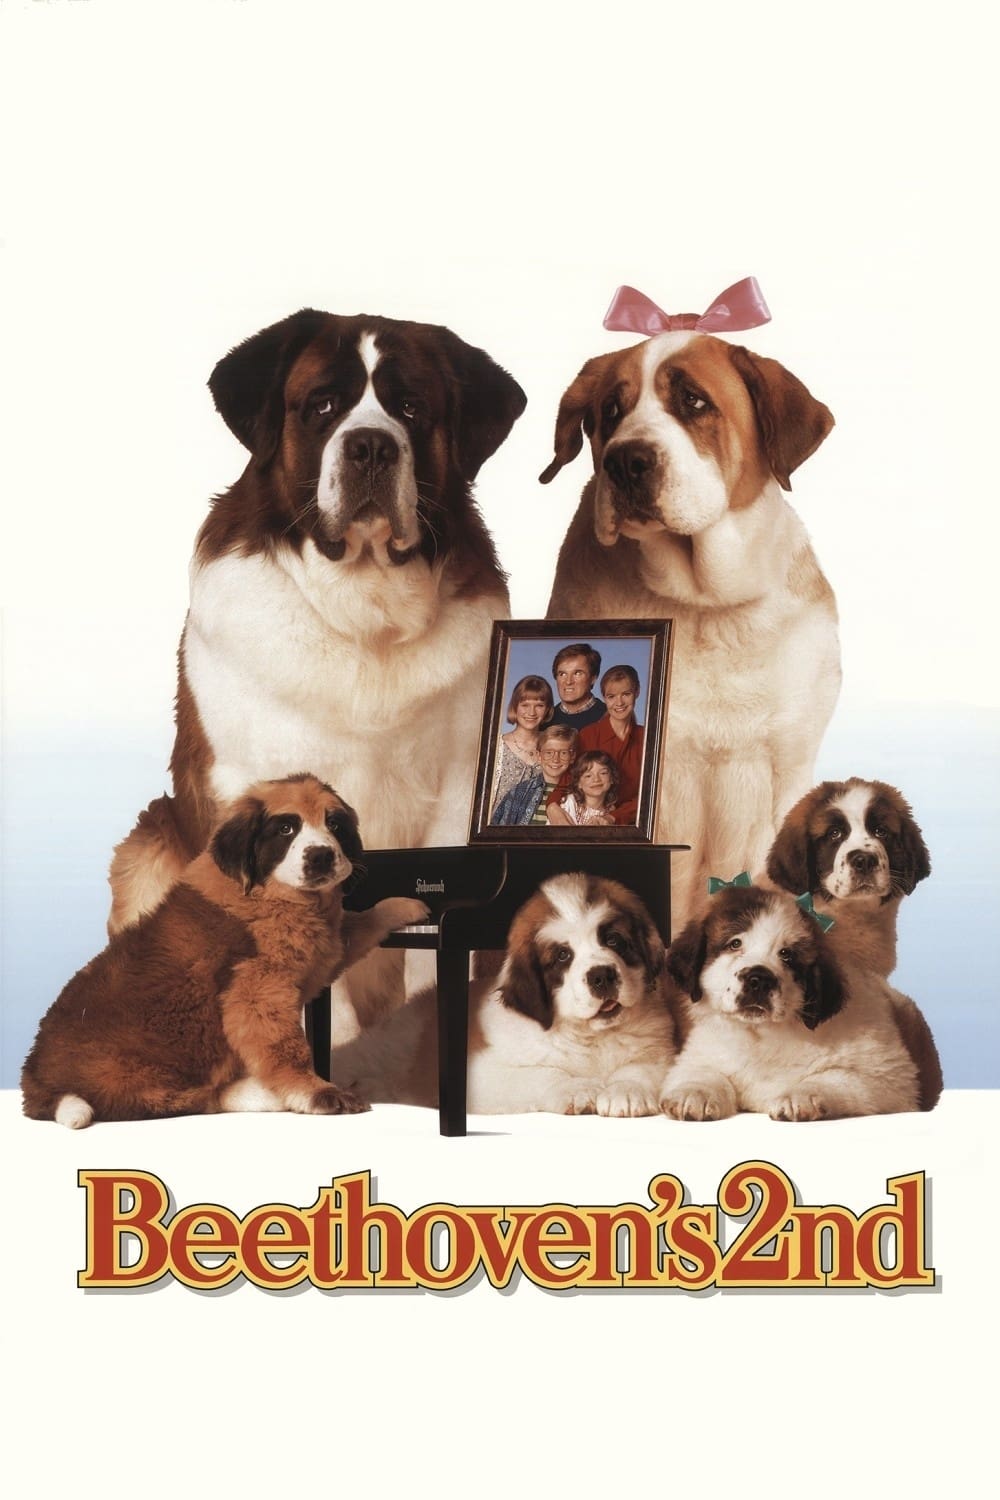 Beethoven 2 (1993)